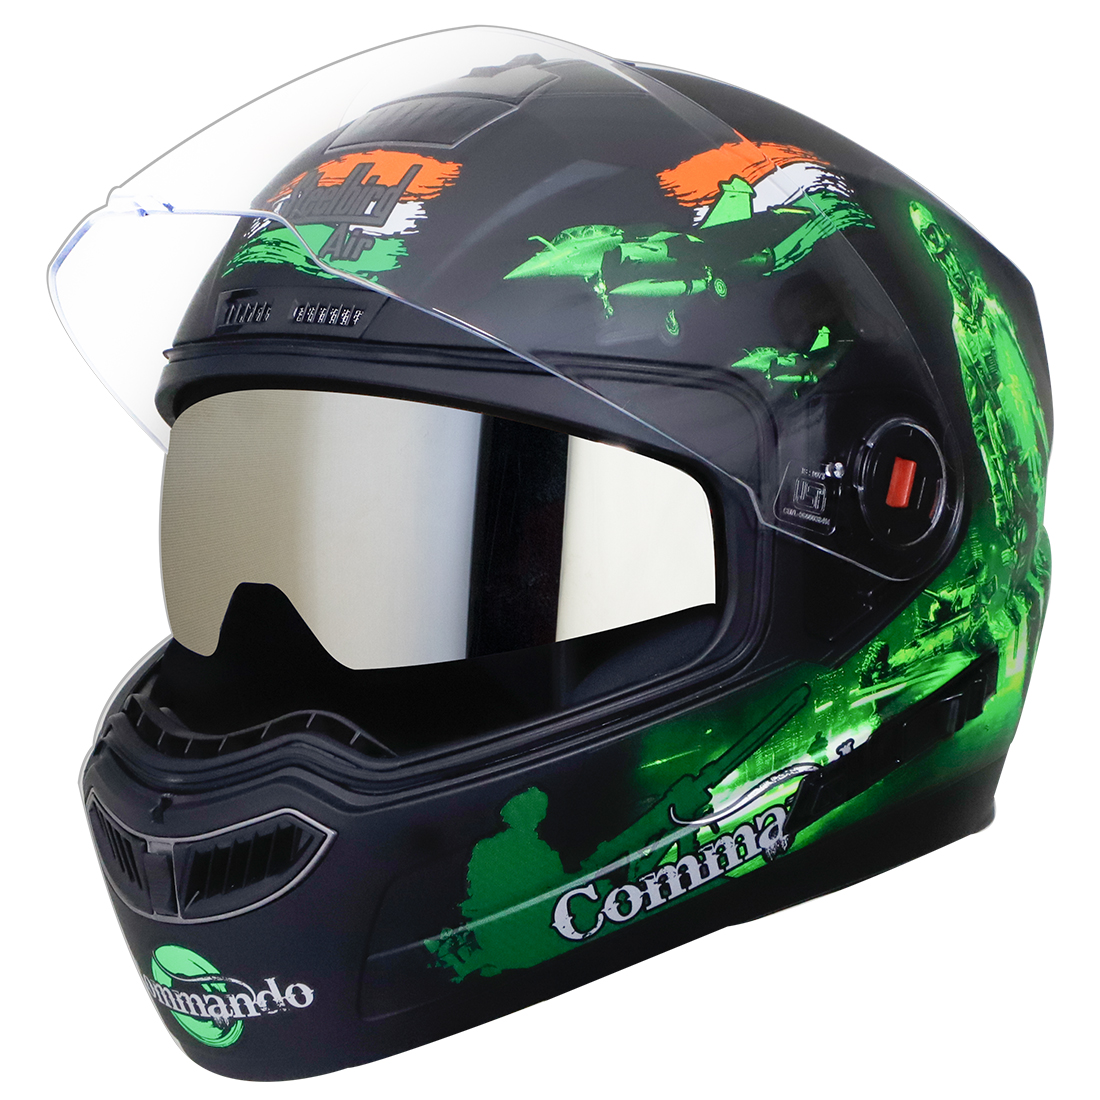 Steelbird SBA-1 Commando Double Visor Full Face Graphics Helmet, Inner Silver Sun Shield And Outer Clear Visor (Glossy Black Green)